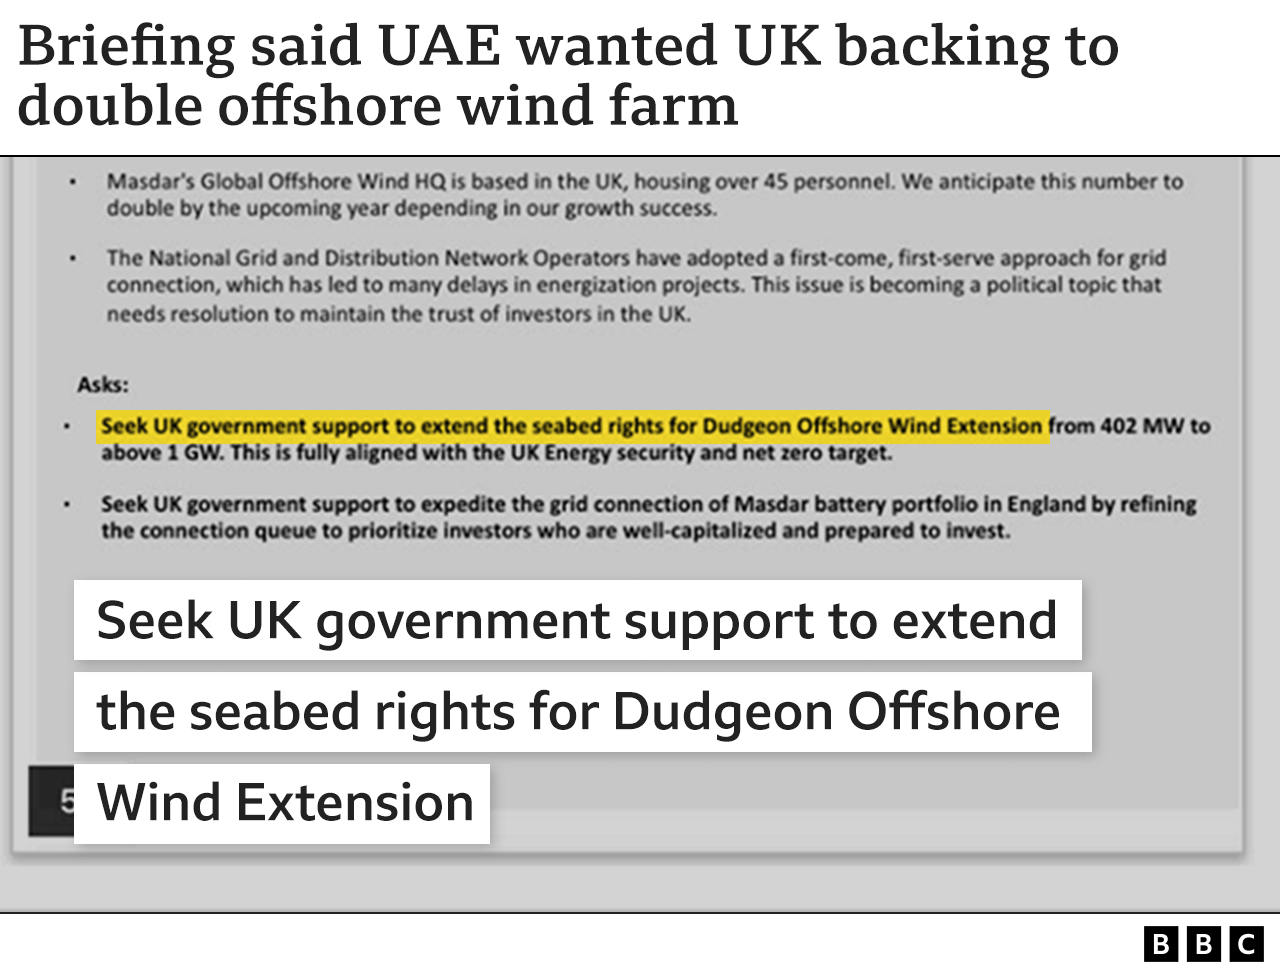 Gráfico que muestra una cita de un documento informativo para la reunión del equipo de la COP28 de los EAU con el Reino Unido, que decía que "buscarían el apoyo del gobierno del Reino Unido para ampliar los derechos del fondo marino para Dudgeon Offshore Wind Extension"